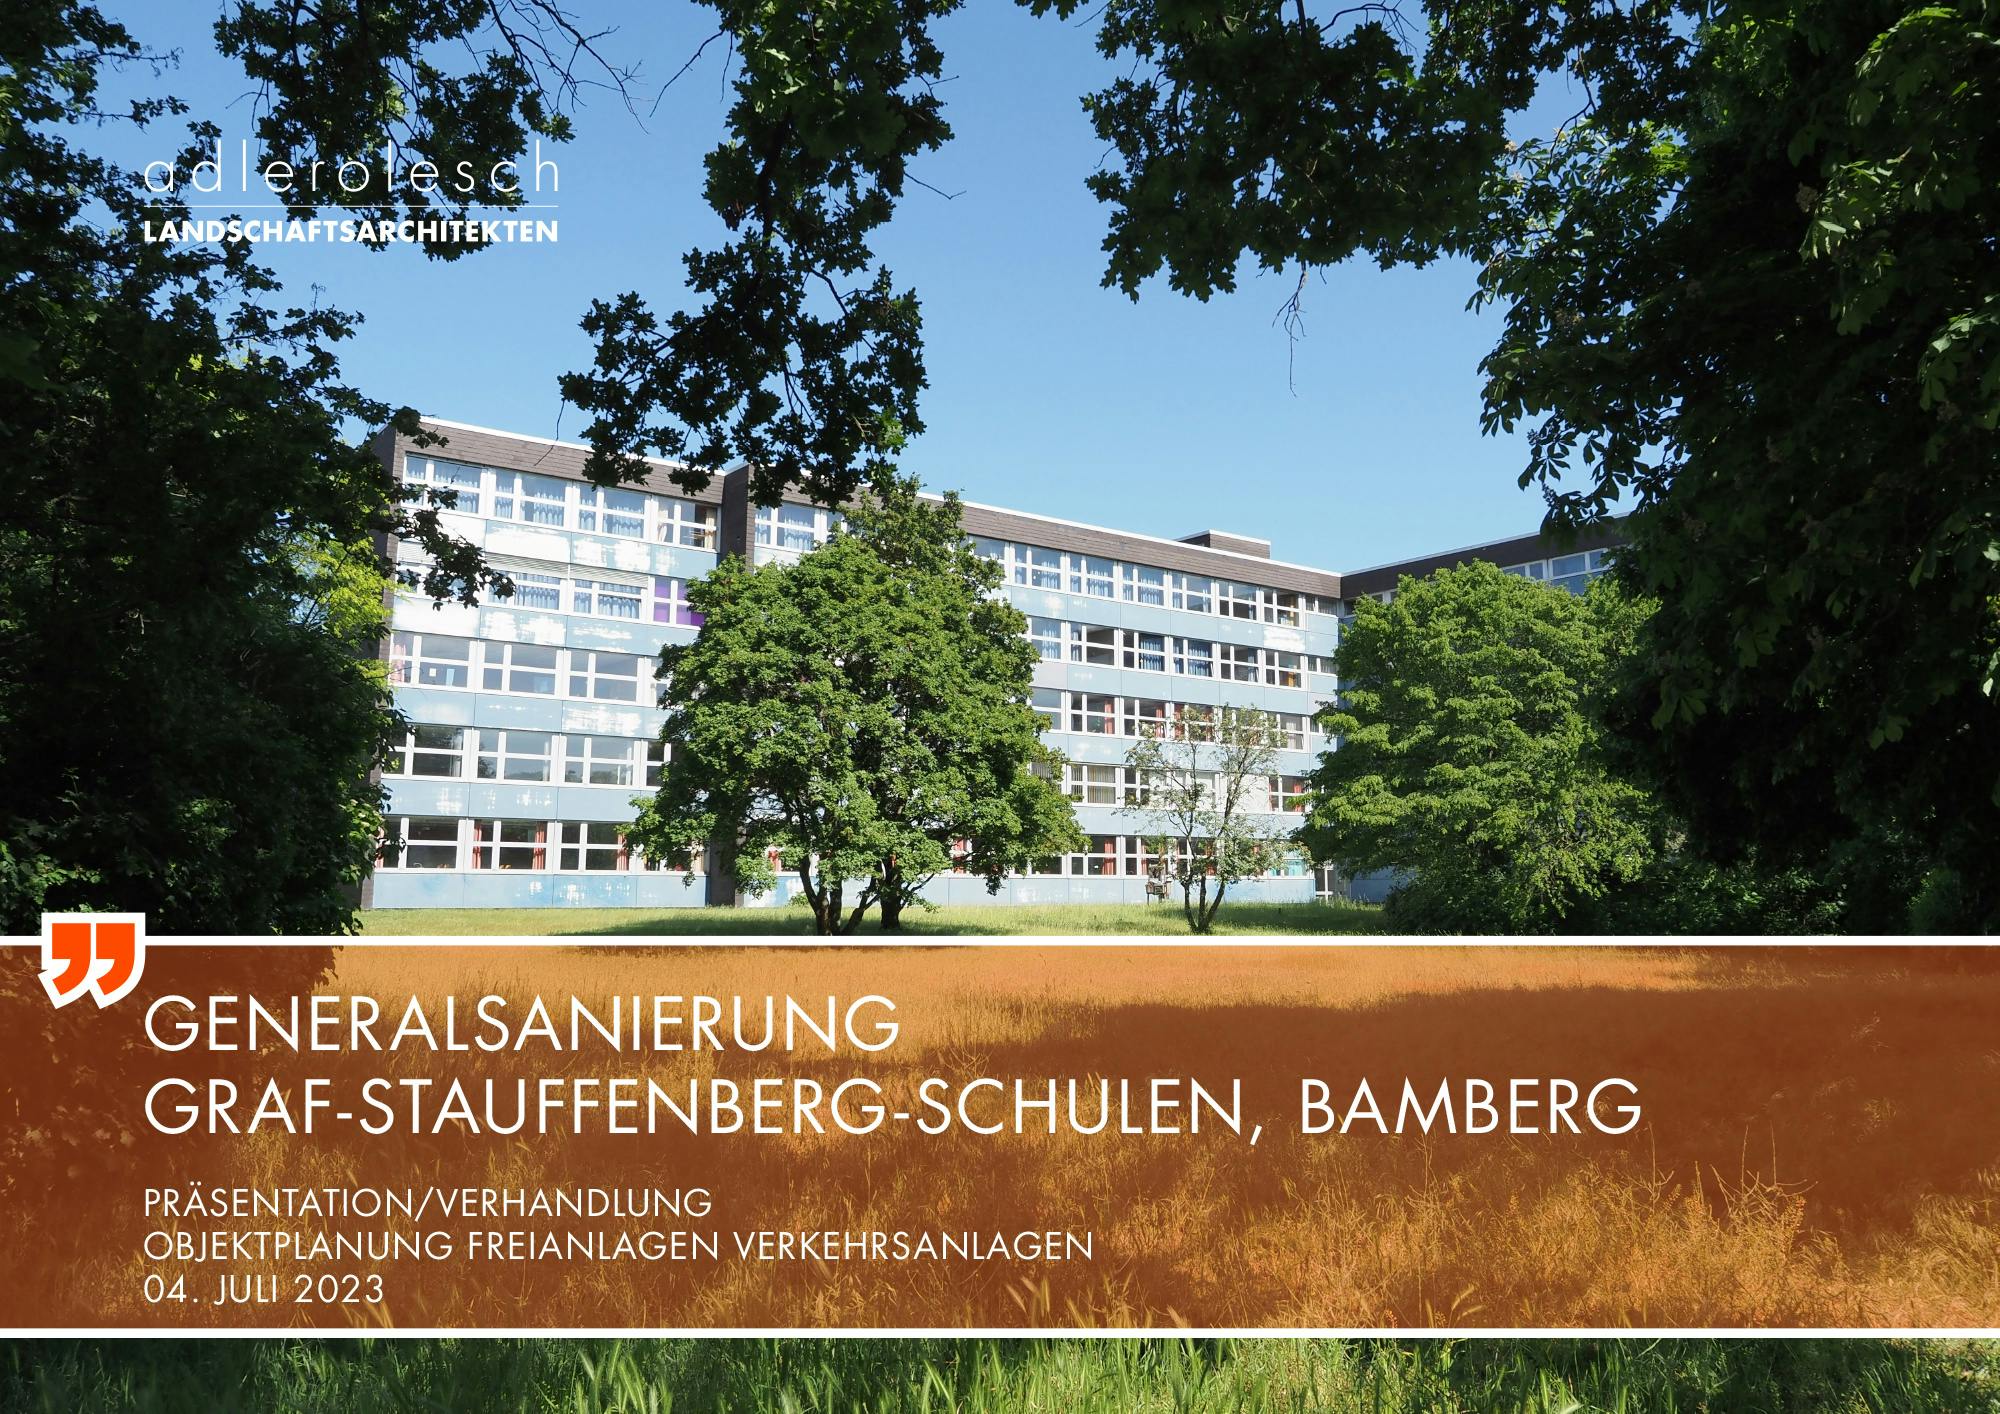 Graf-Stauffenberg-Schulen, Bamberg